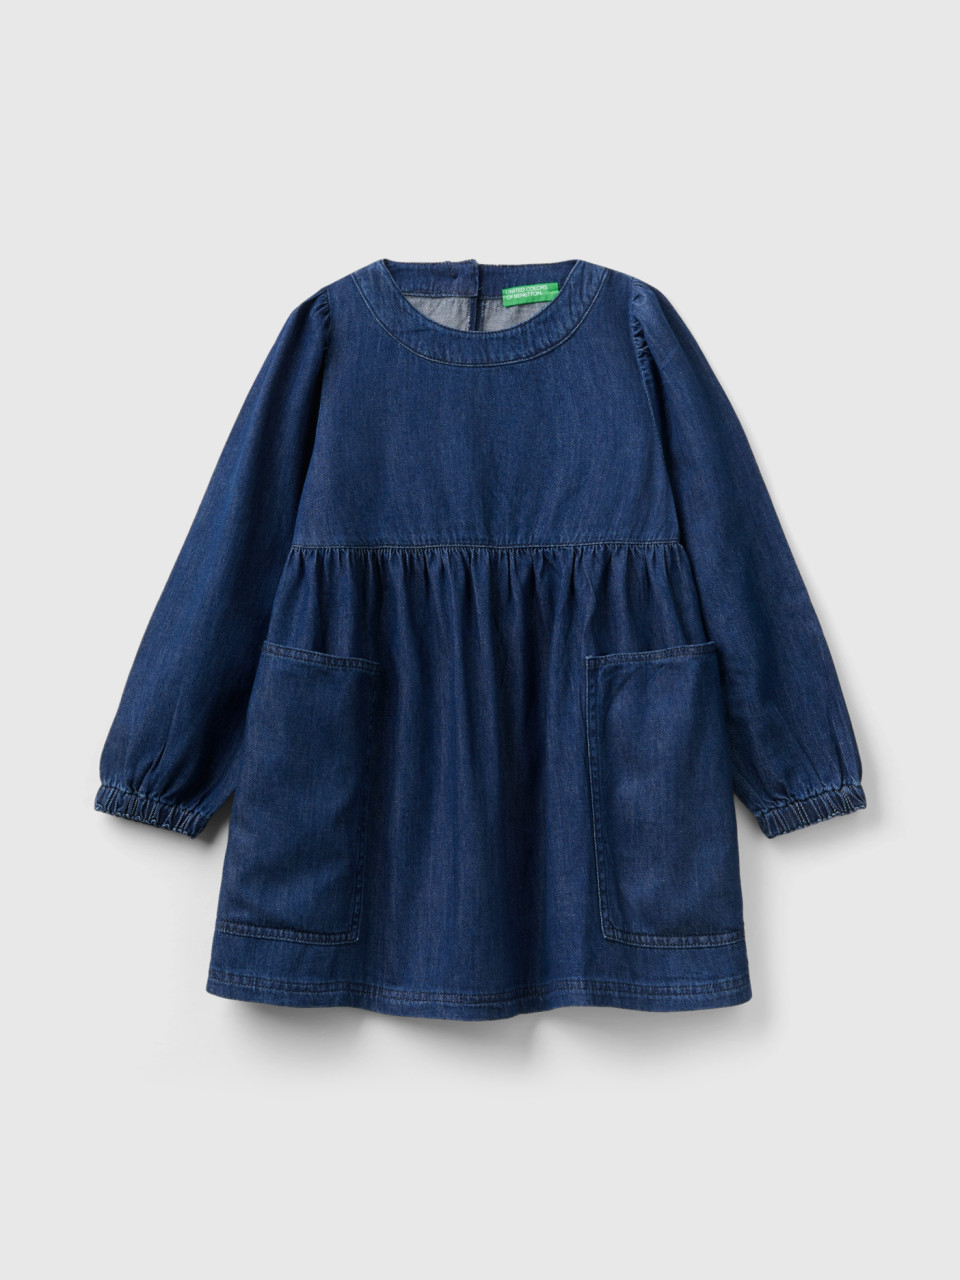 Benetton, Denim Dress With Pockets, Light Blue, Kids